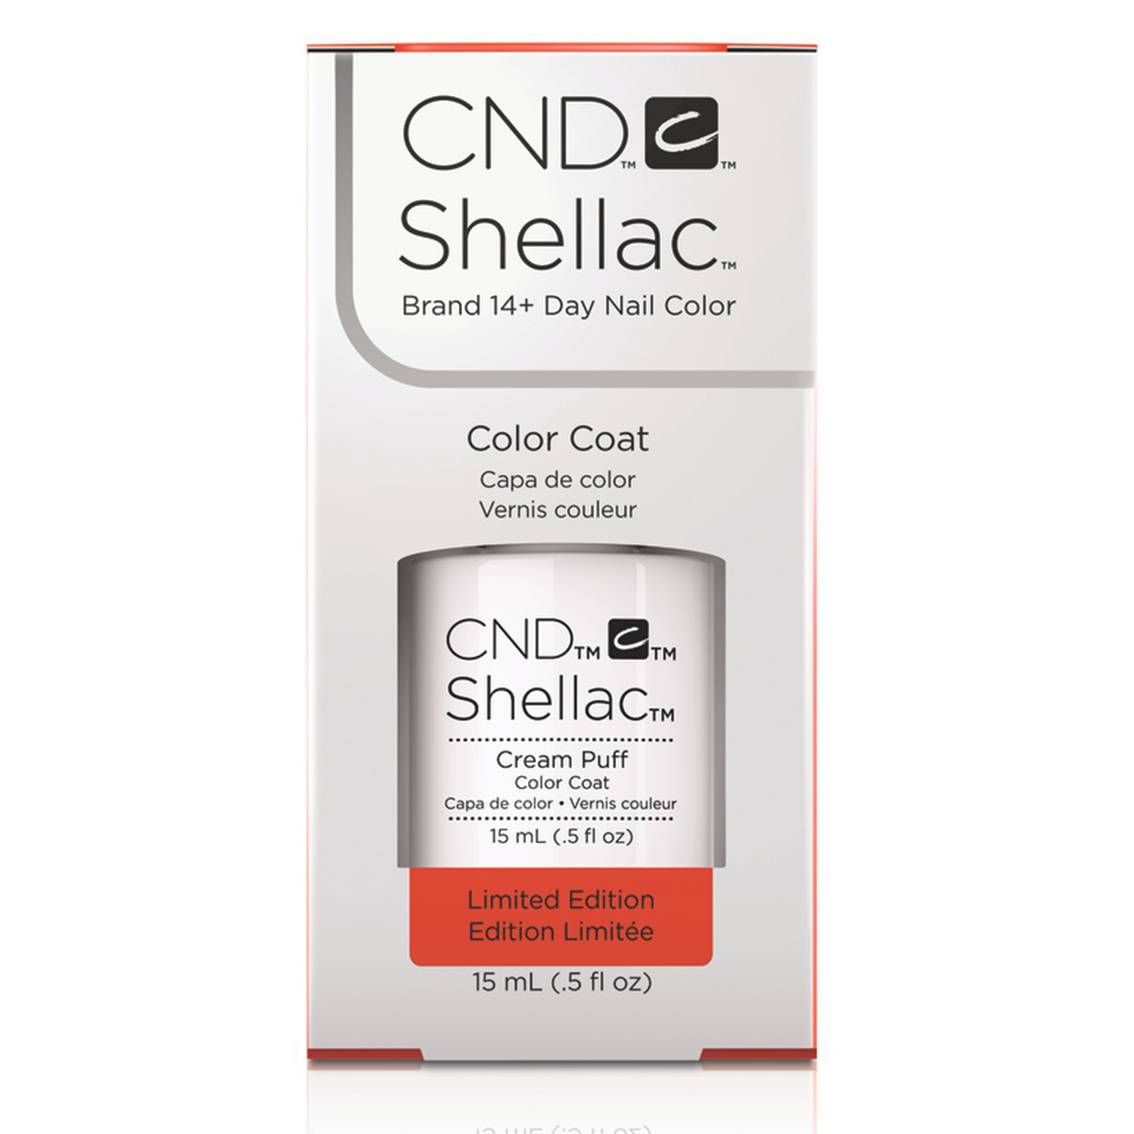 CND™ SHELLAC™ Cream Puff